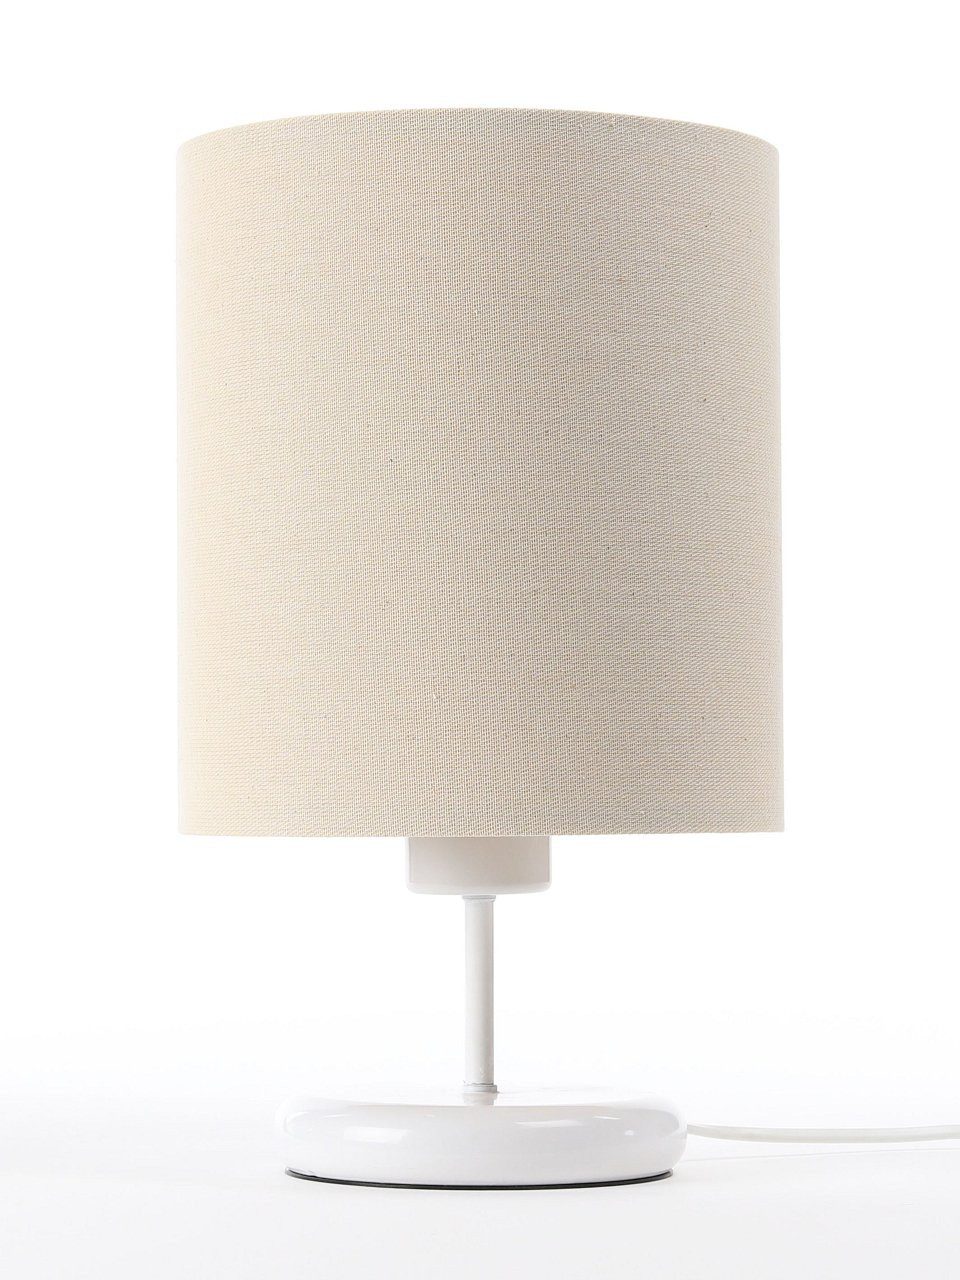 ONZENO Tischleuchte Boho Sleek Gentle 1 20x23x23 cm, einzigartiges Design und hochwertige Lampe